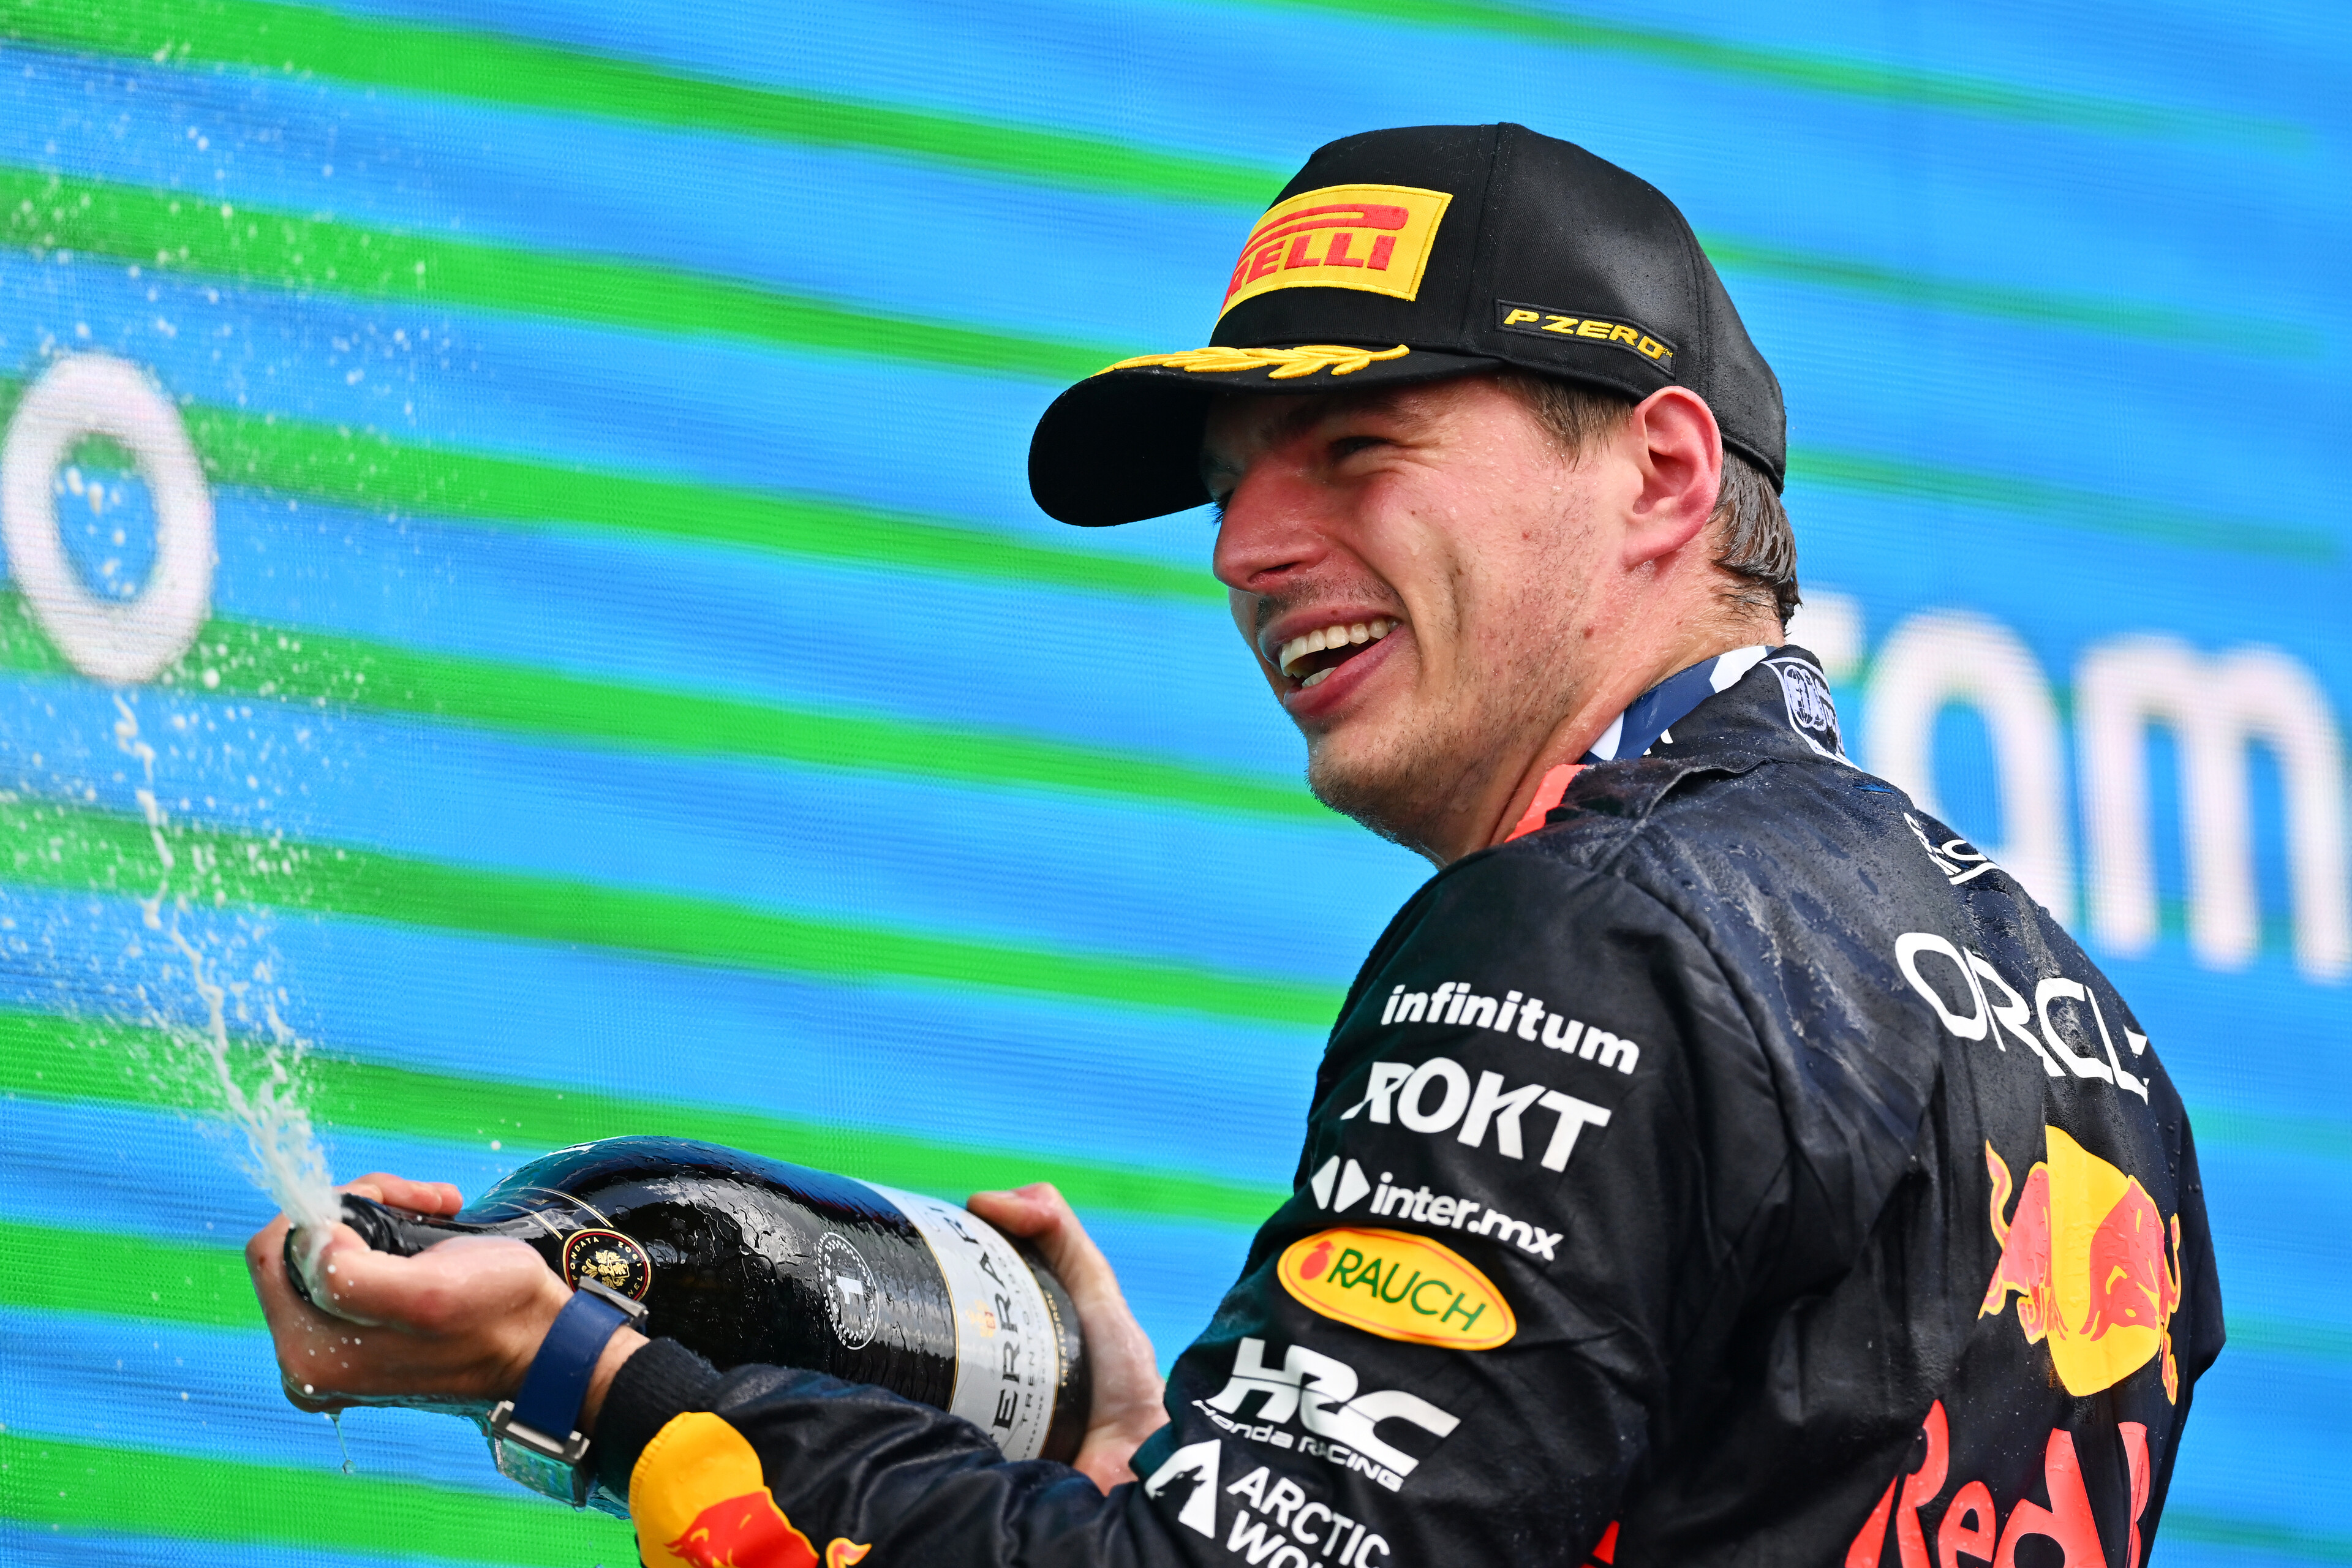 Max Verstappen lett az év autóversenyzője az USA-ban